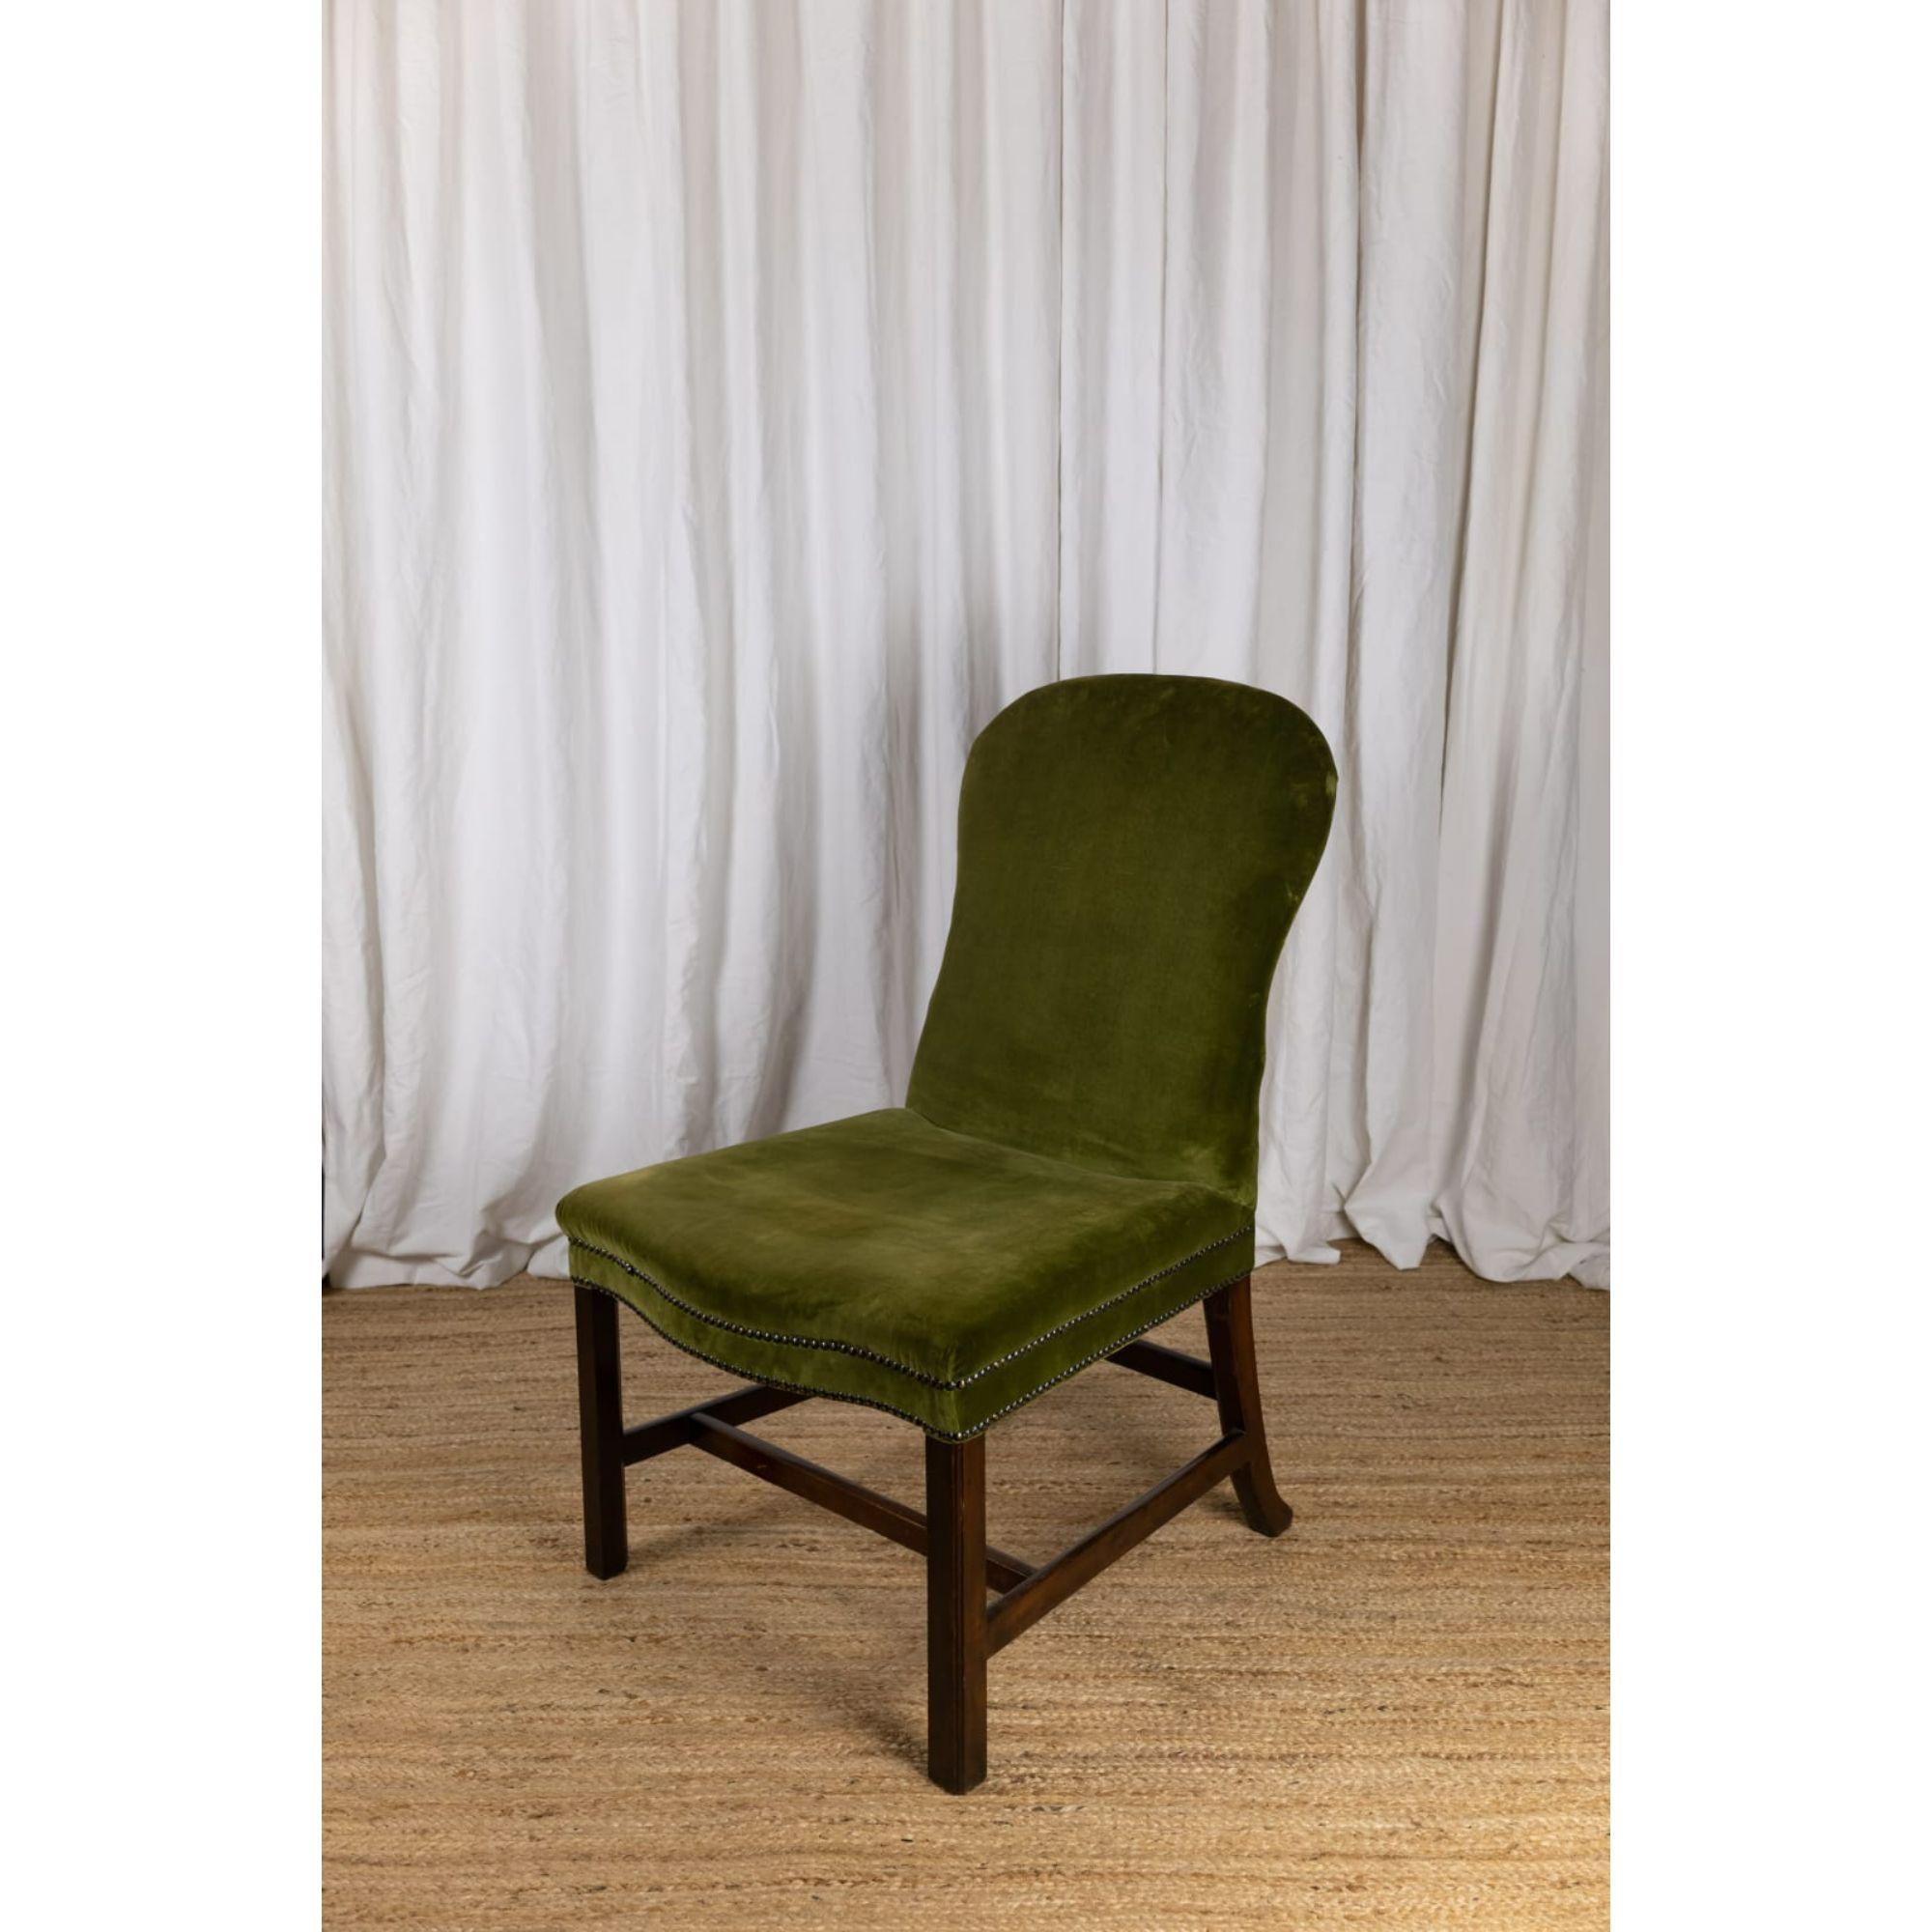 Paire de chaises d'appoint à dossier cuillère, 18ème siècle

Une paire de chaises d'appoint en acajou à dossier en forme de cuillère de style George III. Tapissé de velours vert avec clouage en bronze, il repose sur des pieds carrés unis par un